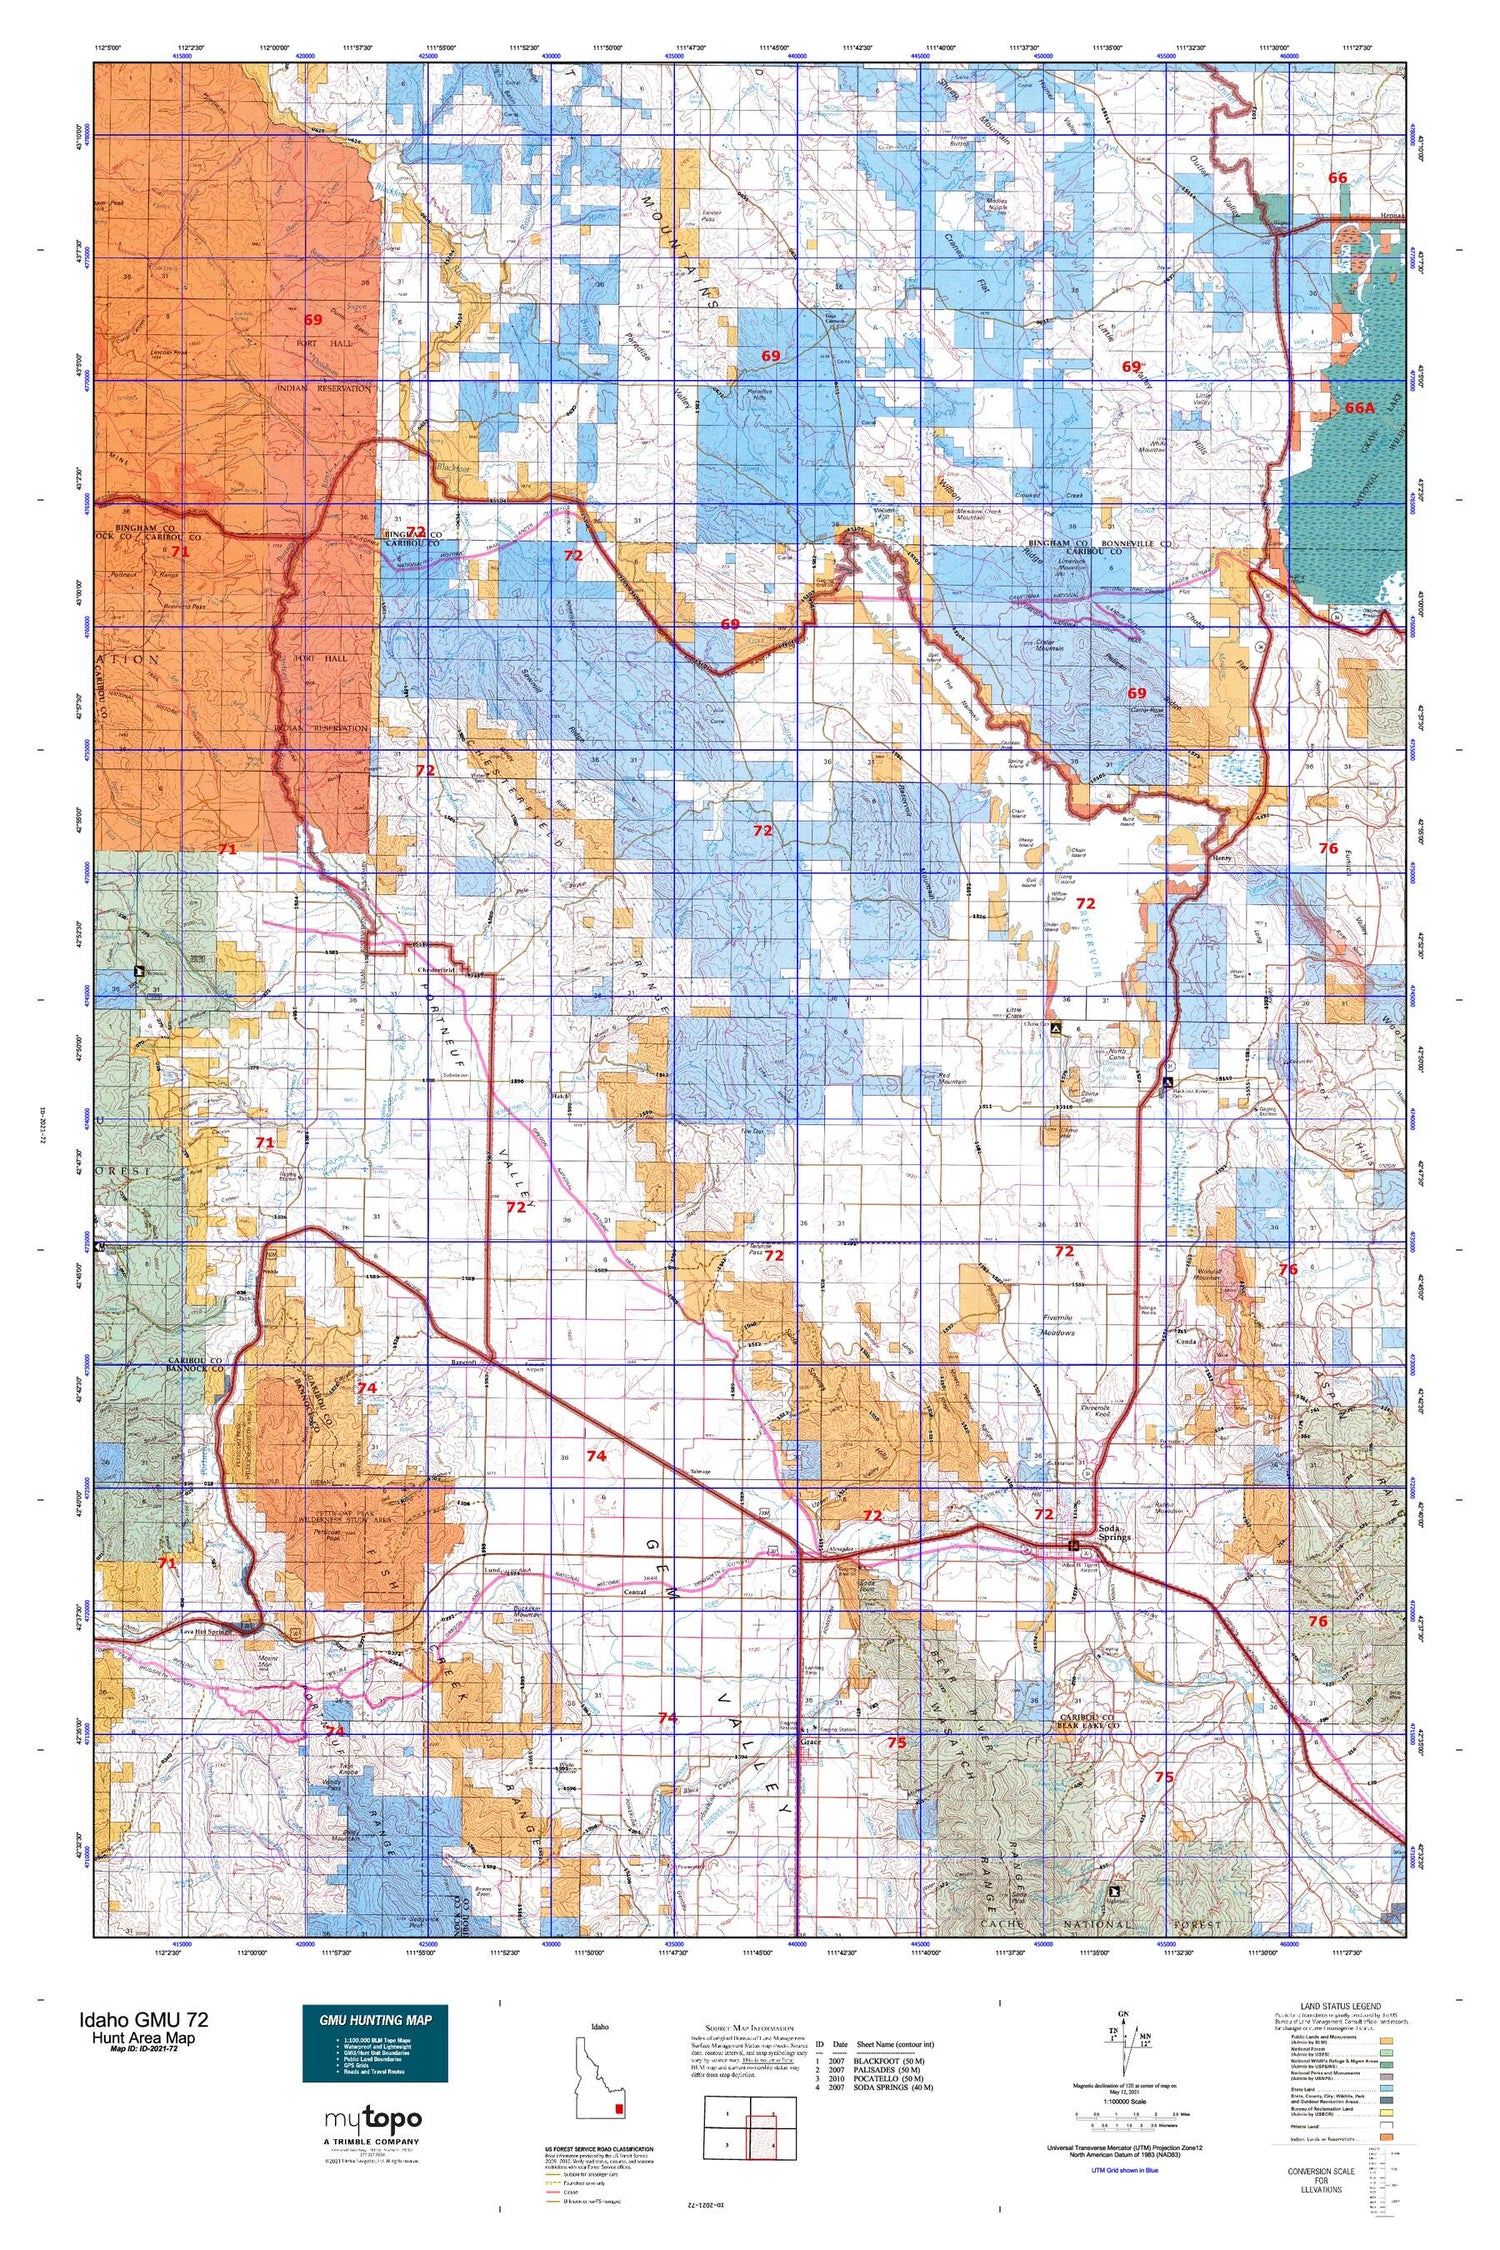 Idaho GMU 72 Map Image